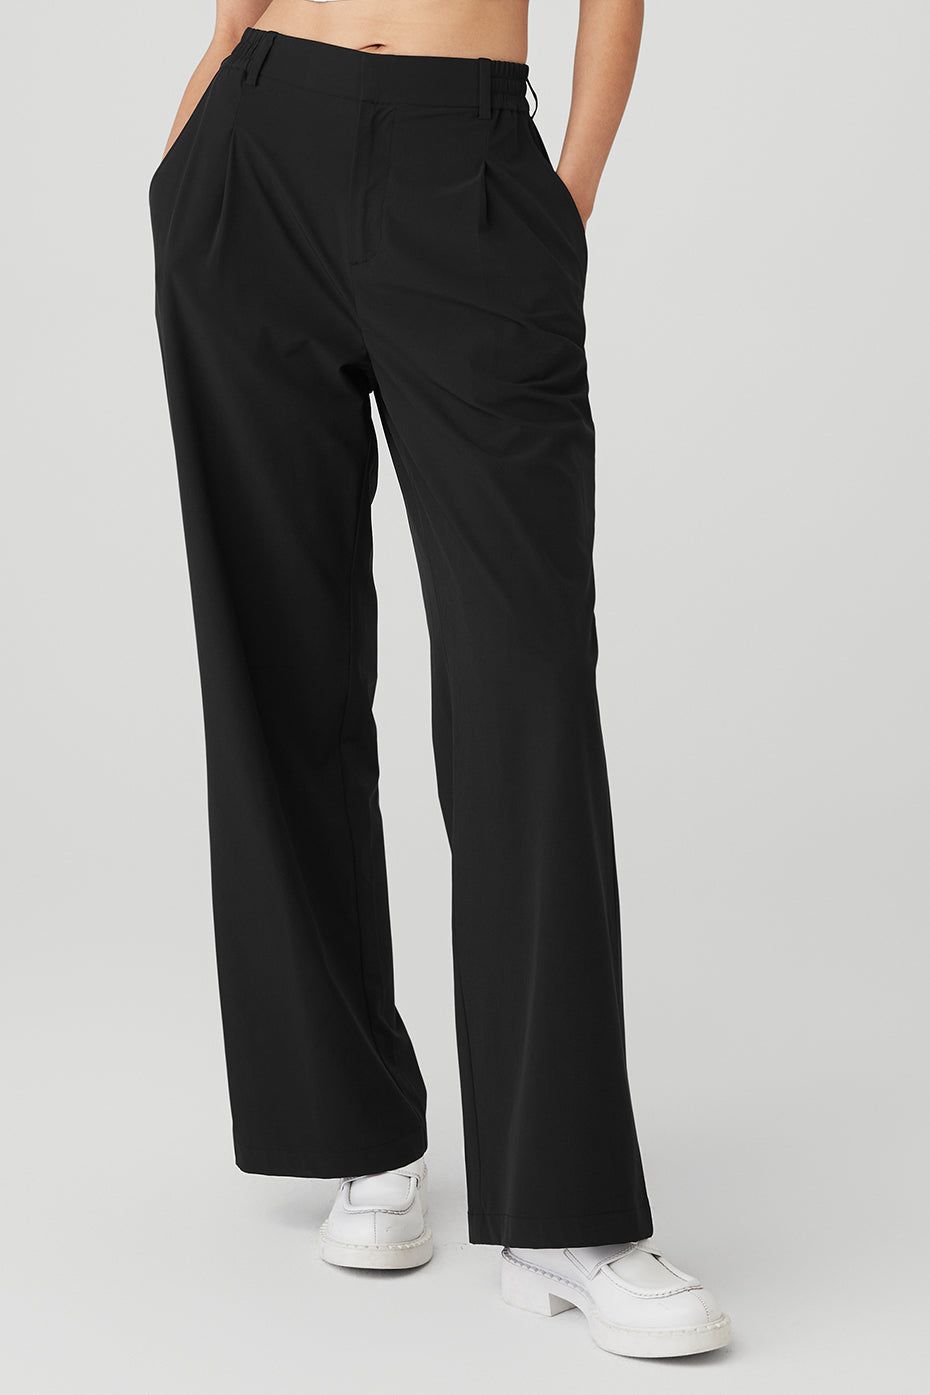 Women Dress Pants Business Office Work Trousers High Waist Straight Leg  Black | eBay